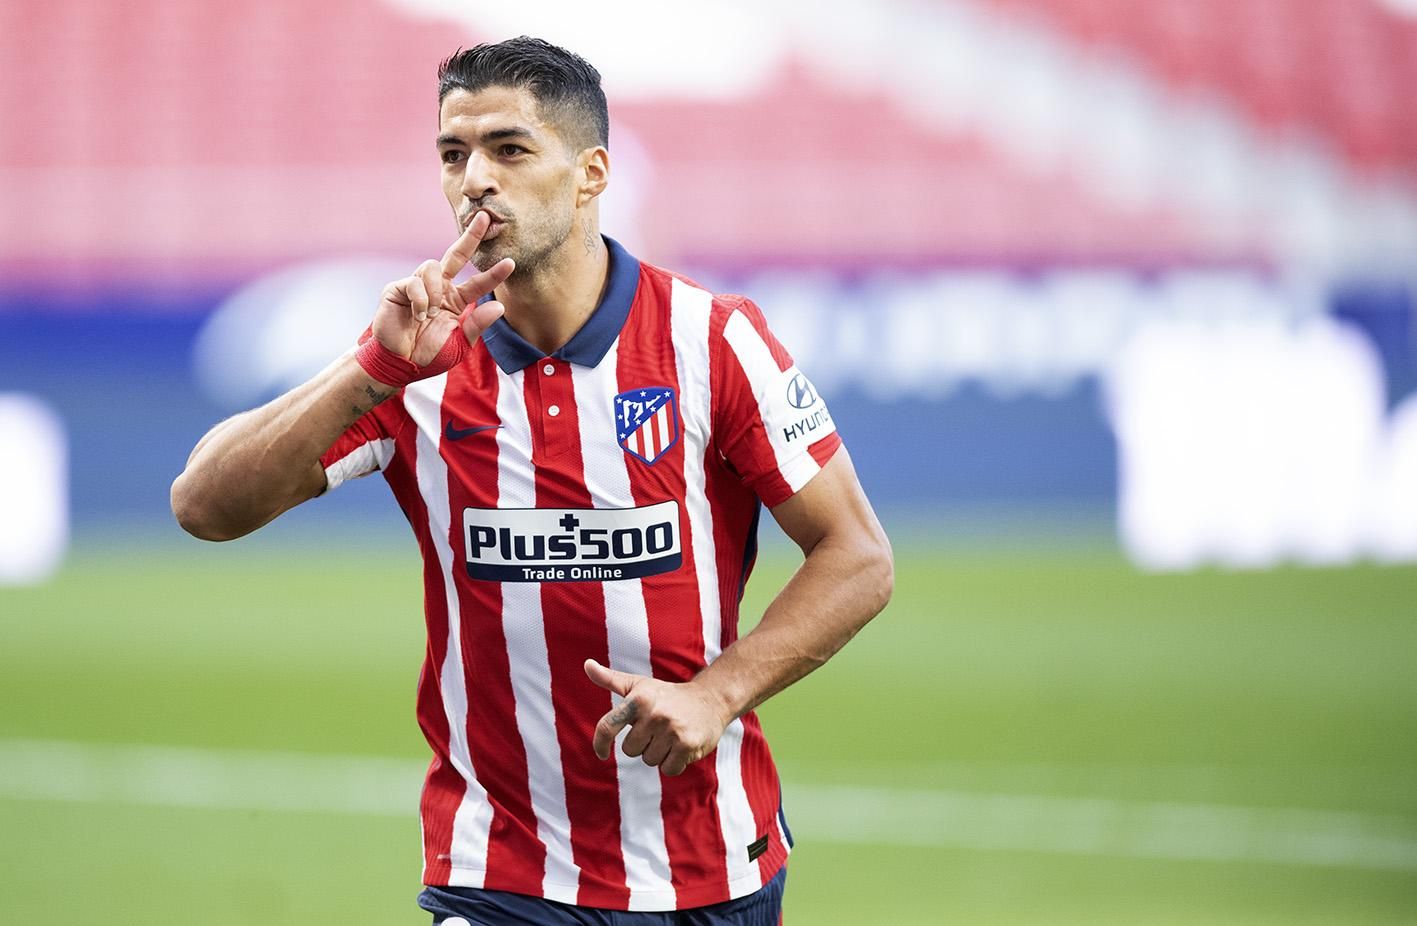 Луис Суарес оформил дубль в первом же матче за "Атлетико": видео